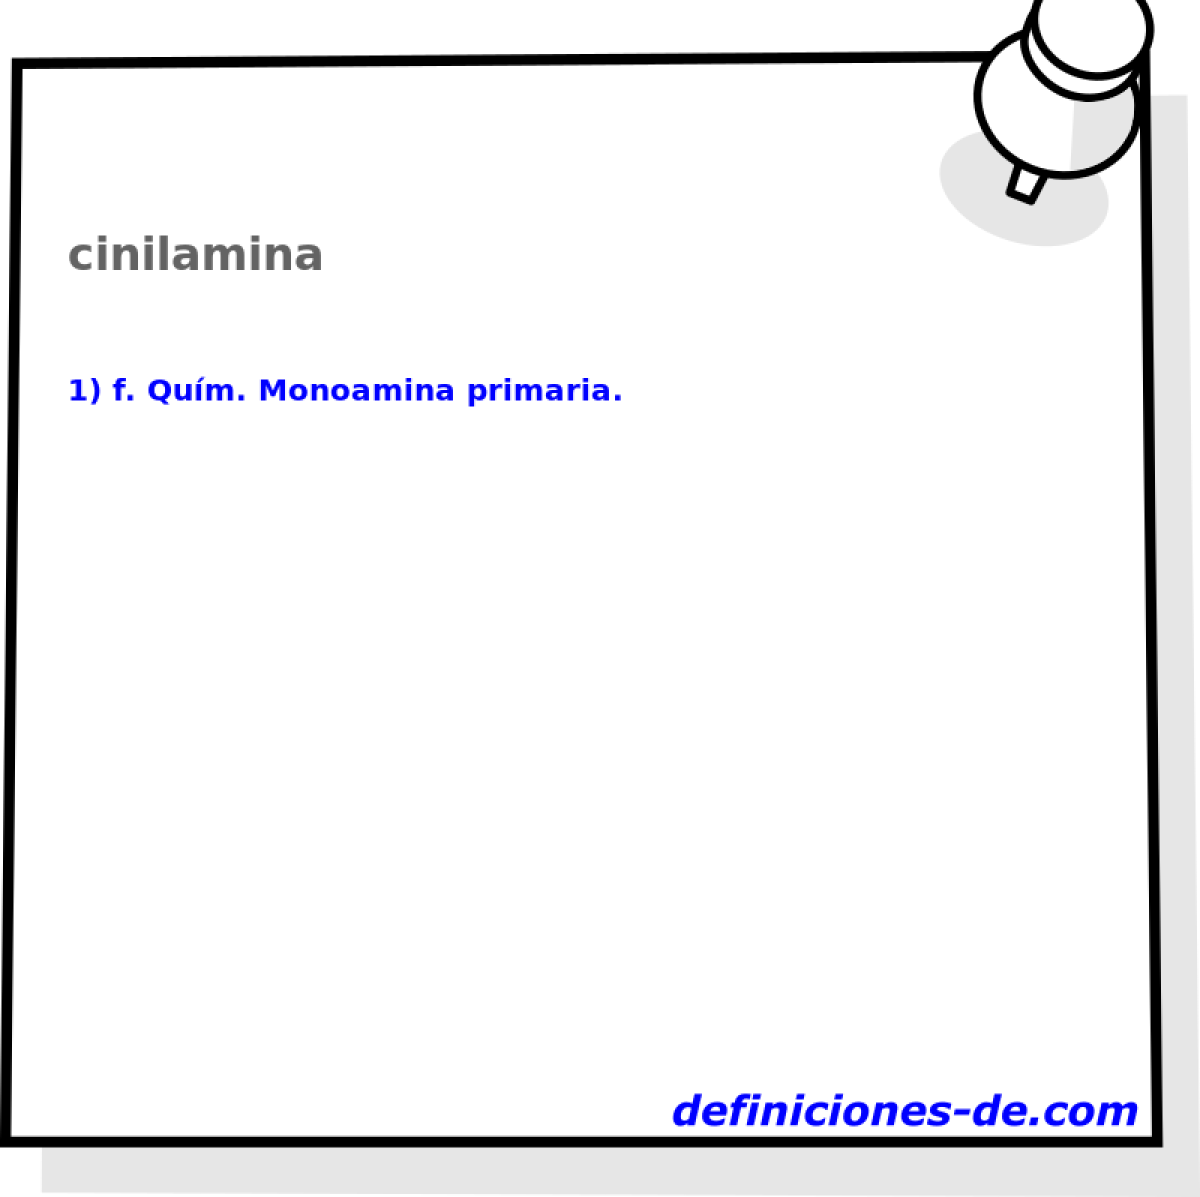 cinilamina 